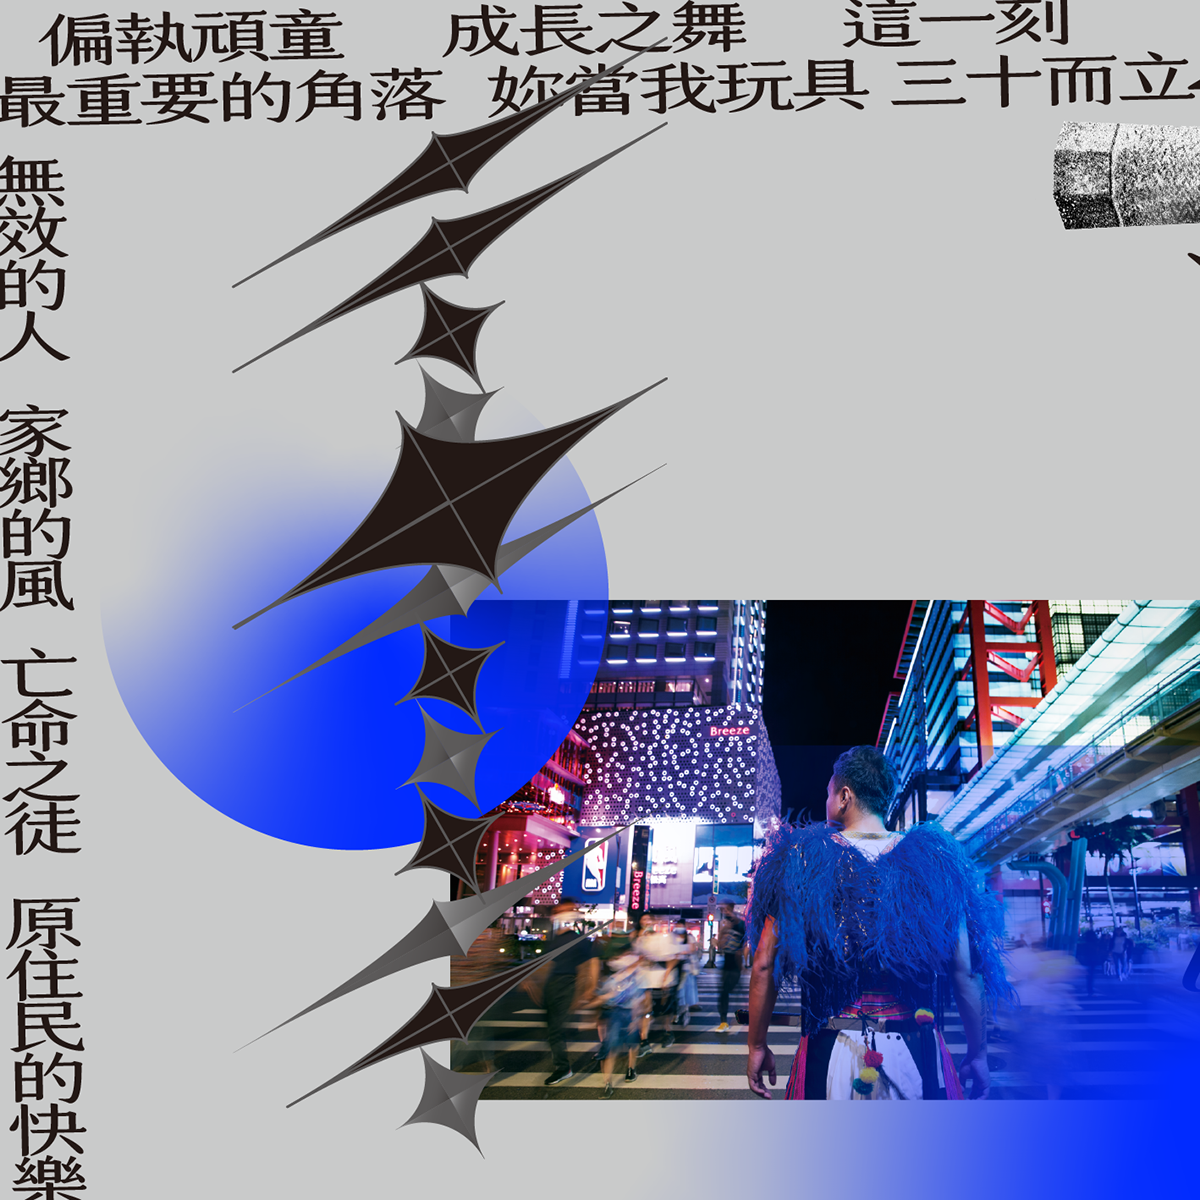 Album band cover design graphic sionhsu